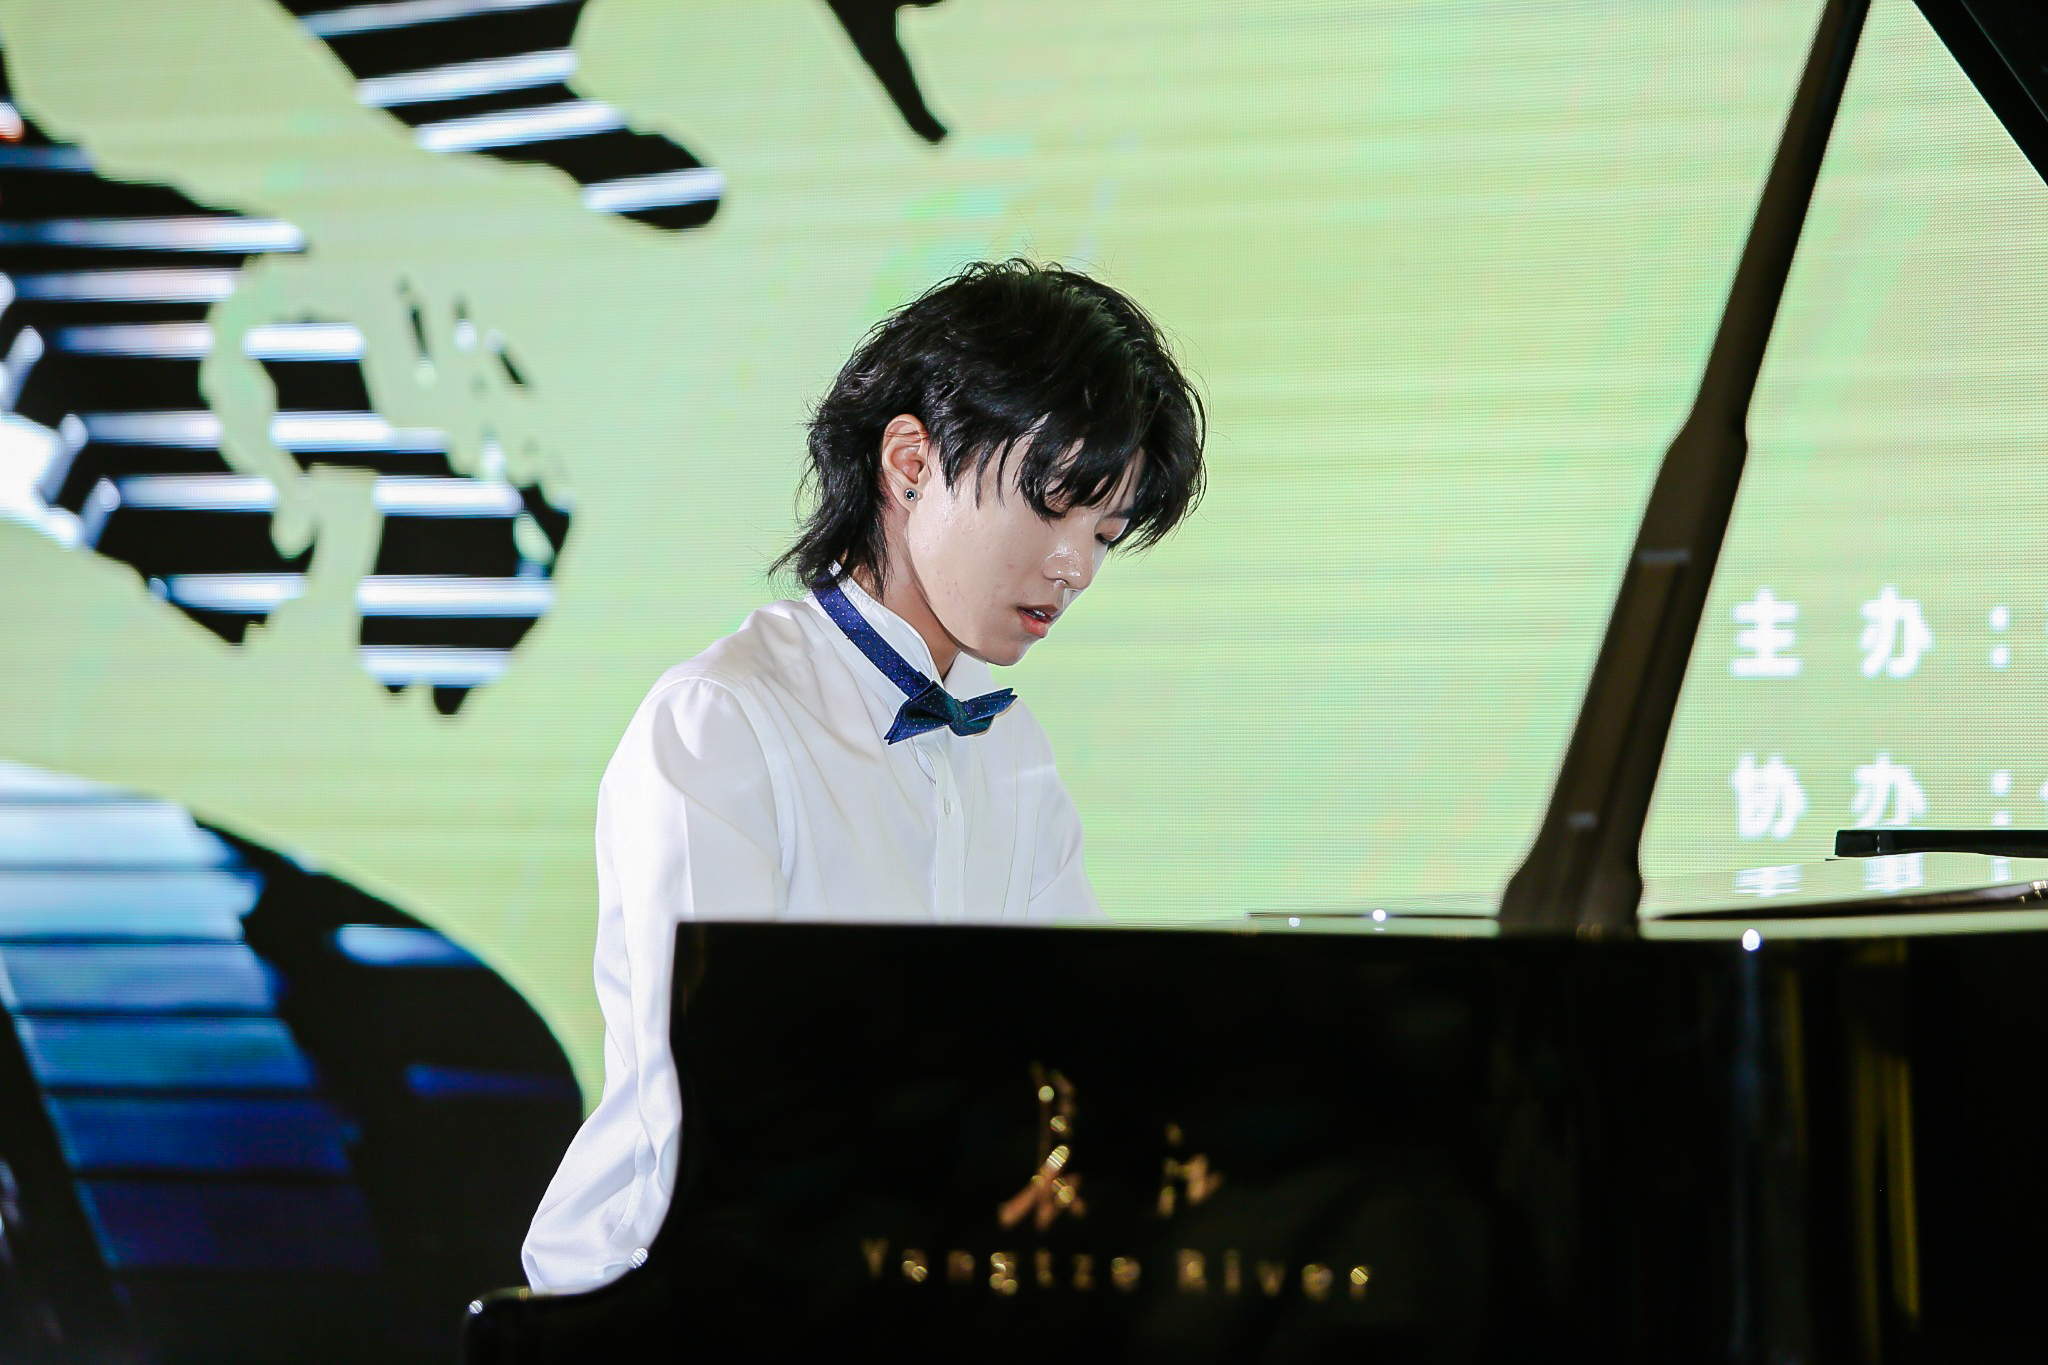 第三届李斯特国际青少年钢琴大赛-中国选拔赛暨颁奖典礼在沪举行